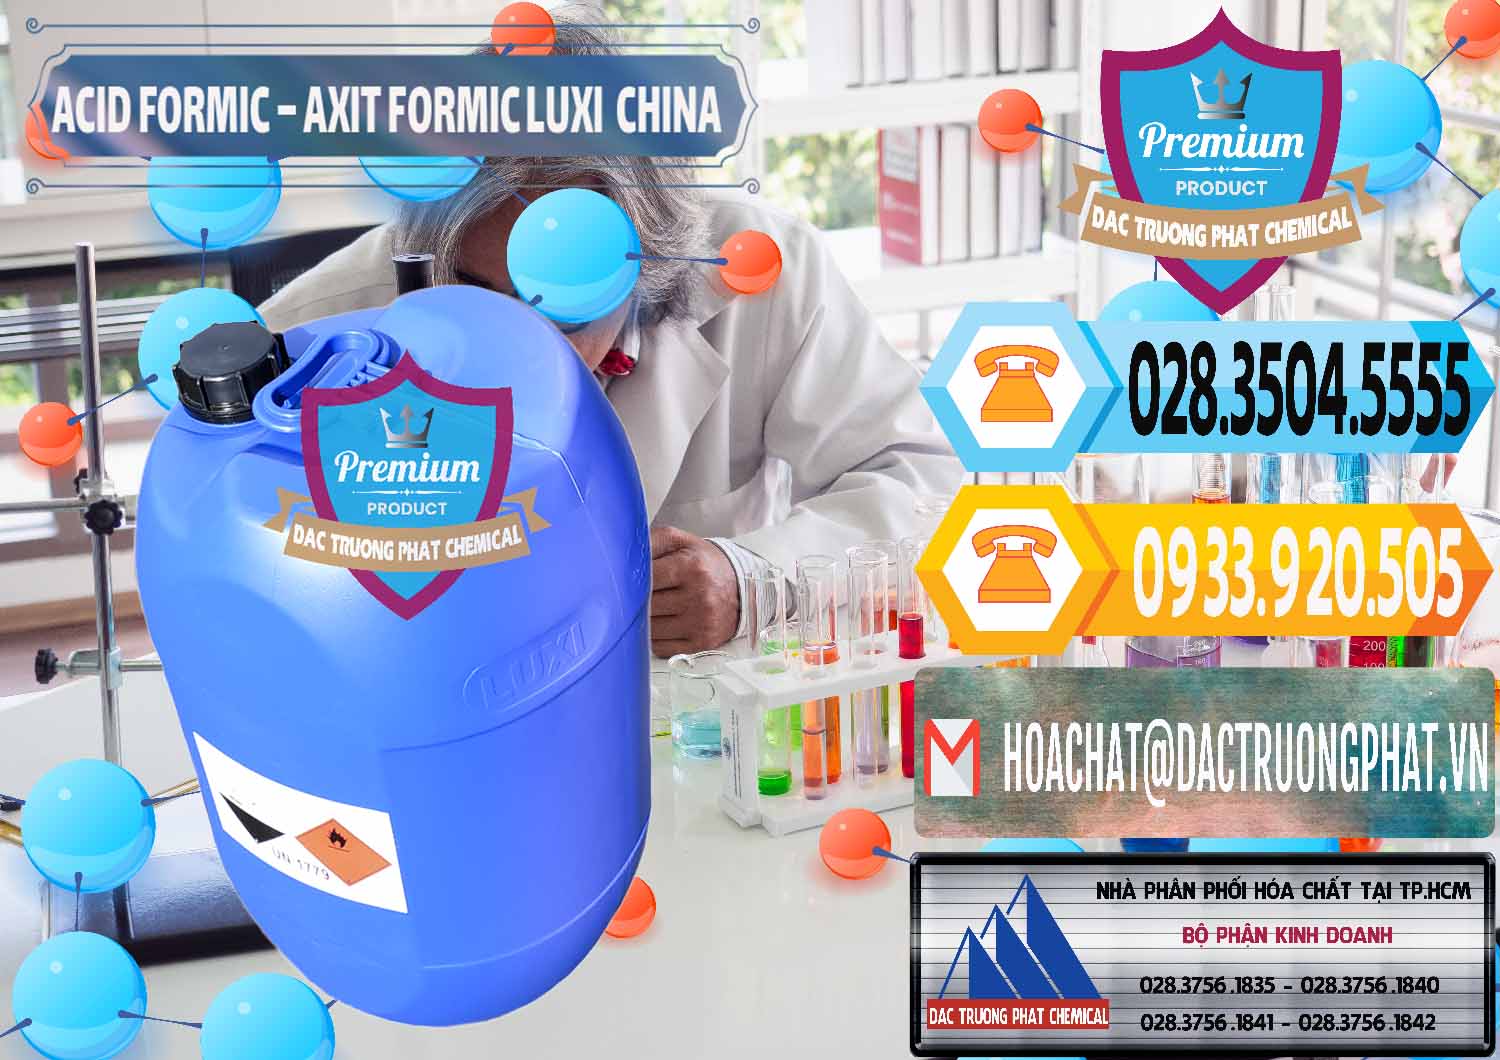 Cty cung cấp và bán Acid Formic - Axit Formic Luxi Trung Quốc China - 0029 - Nơi phân phối - nhập khẩu hóa chất tại TP.HCM - hoachattayrua.net